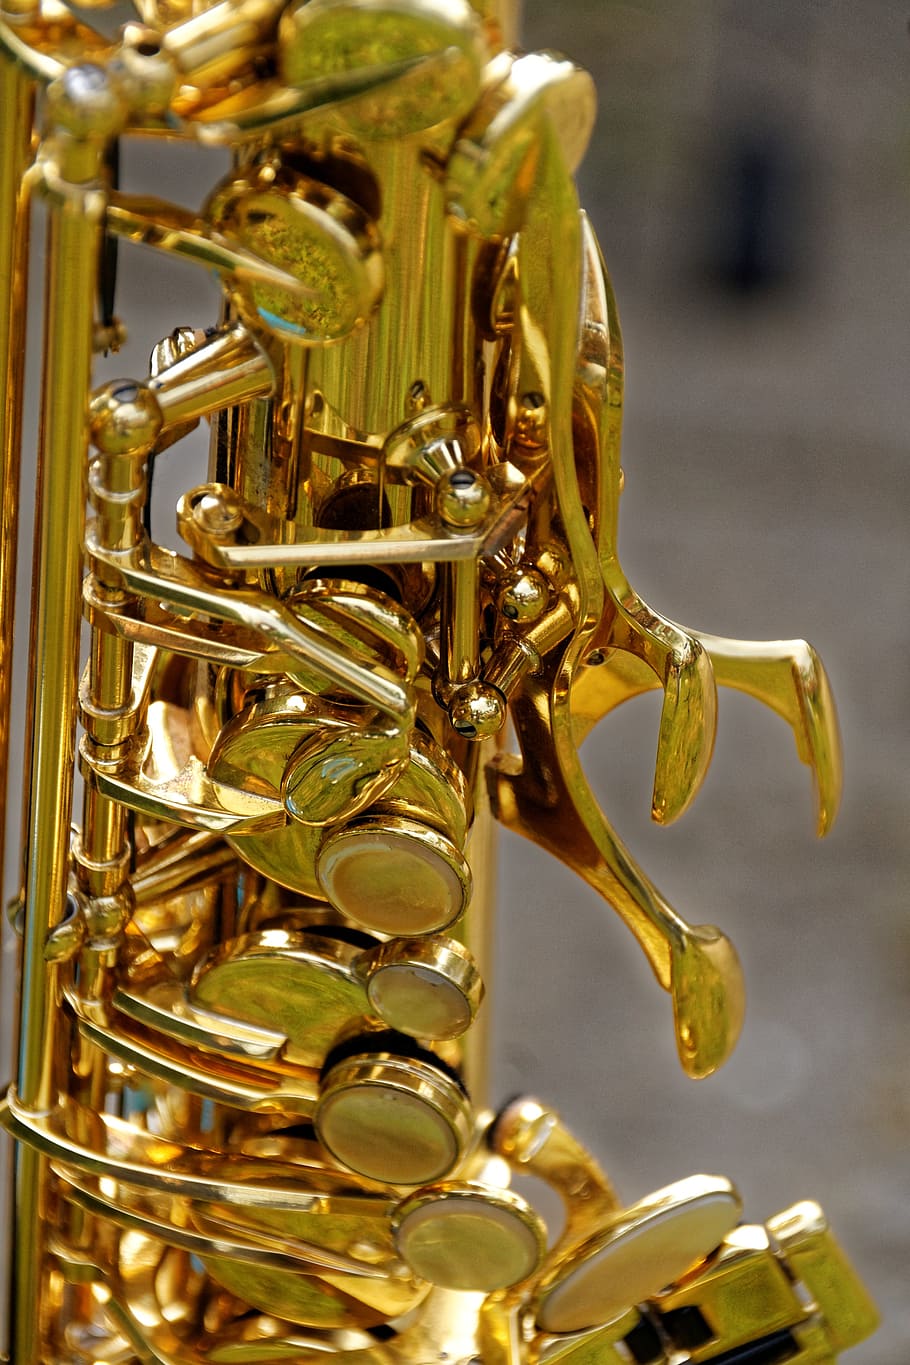 instrumen, saksofon, detail saksofon, close up, analog, band, musik, tutup, Alat musik, Musik jazz